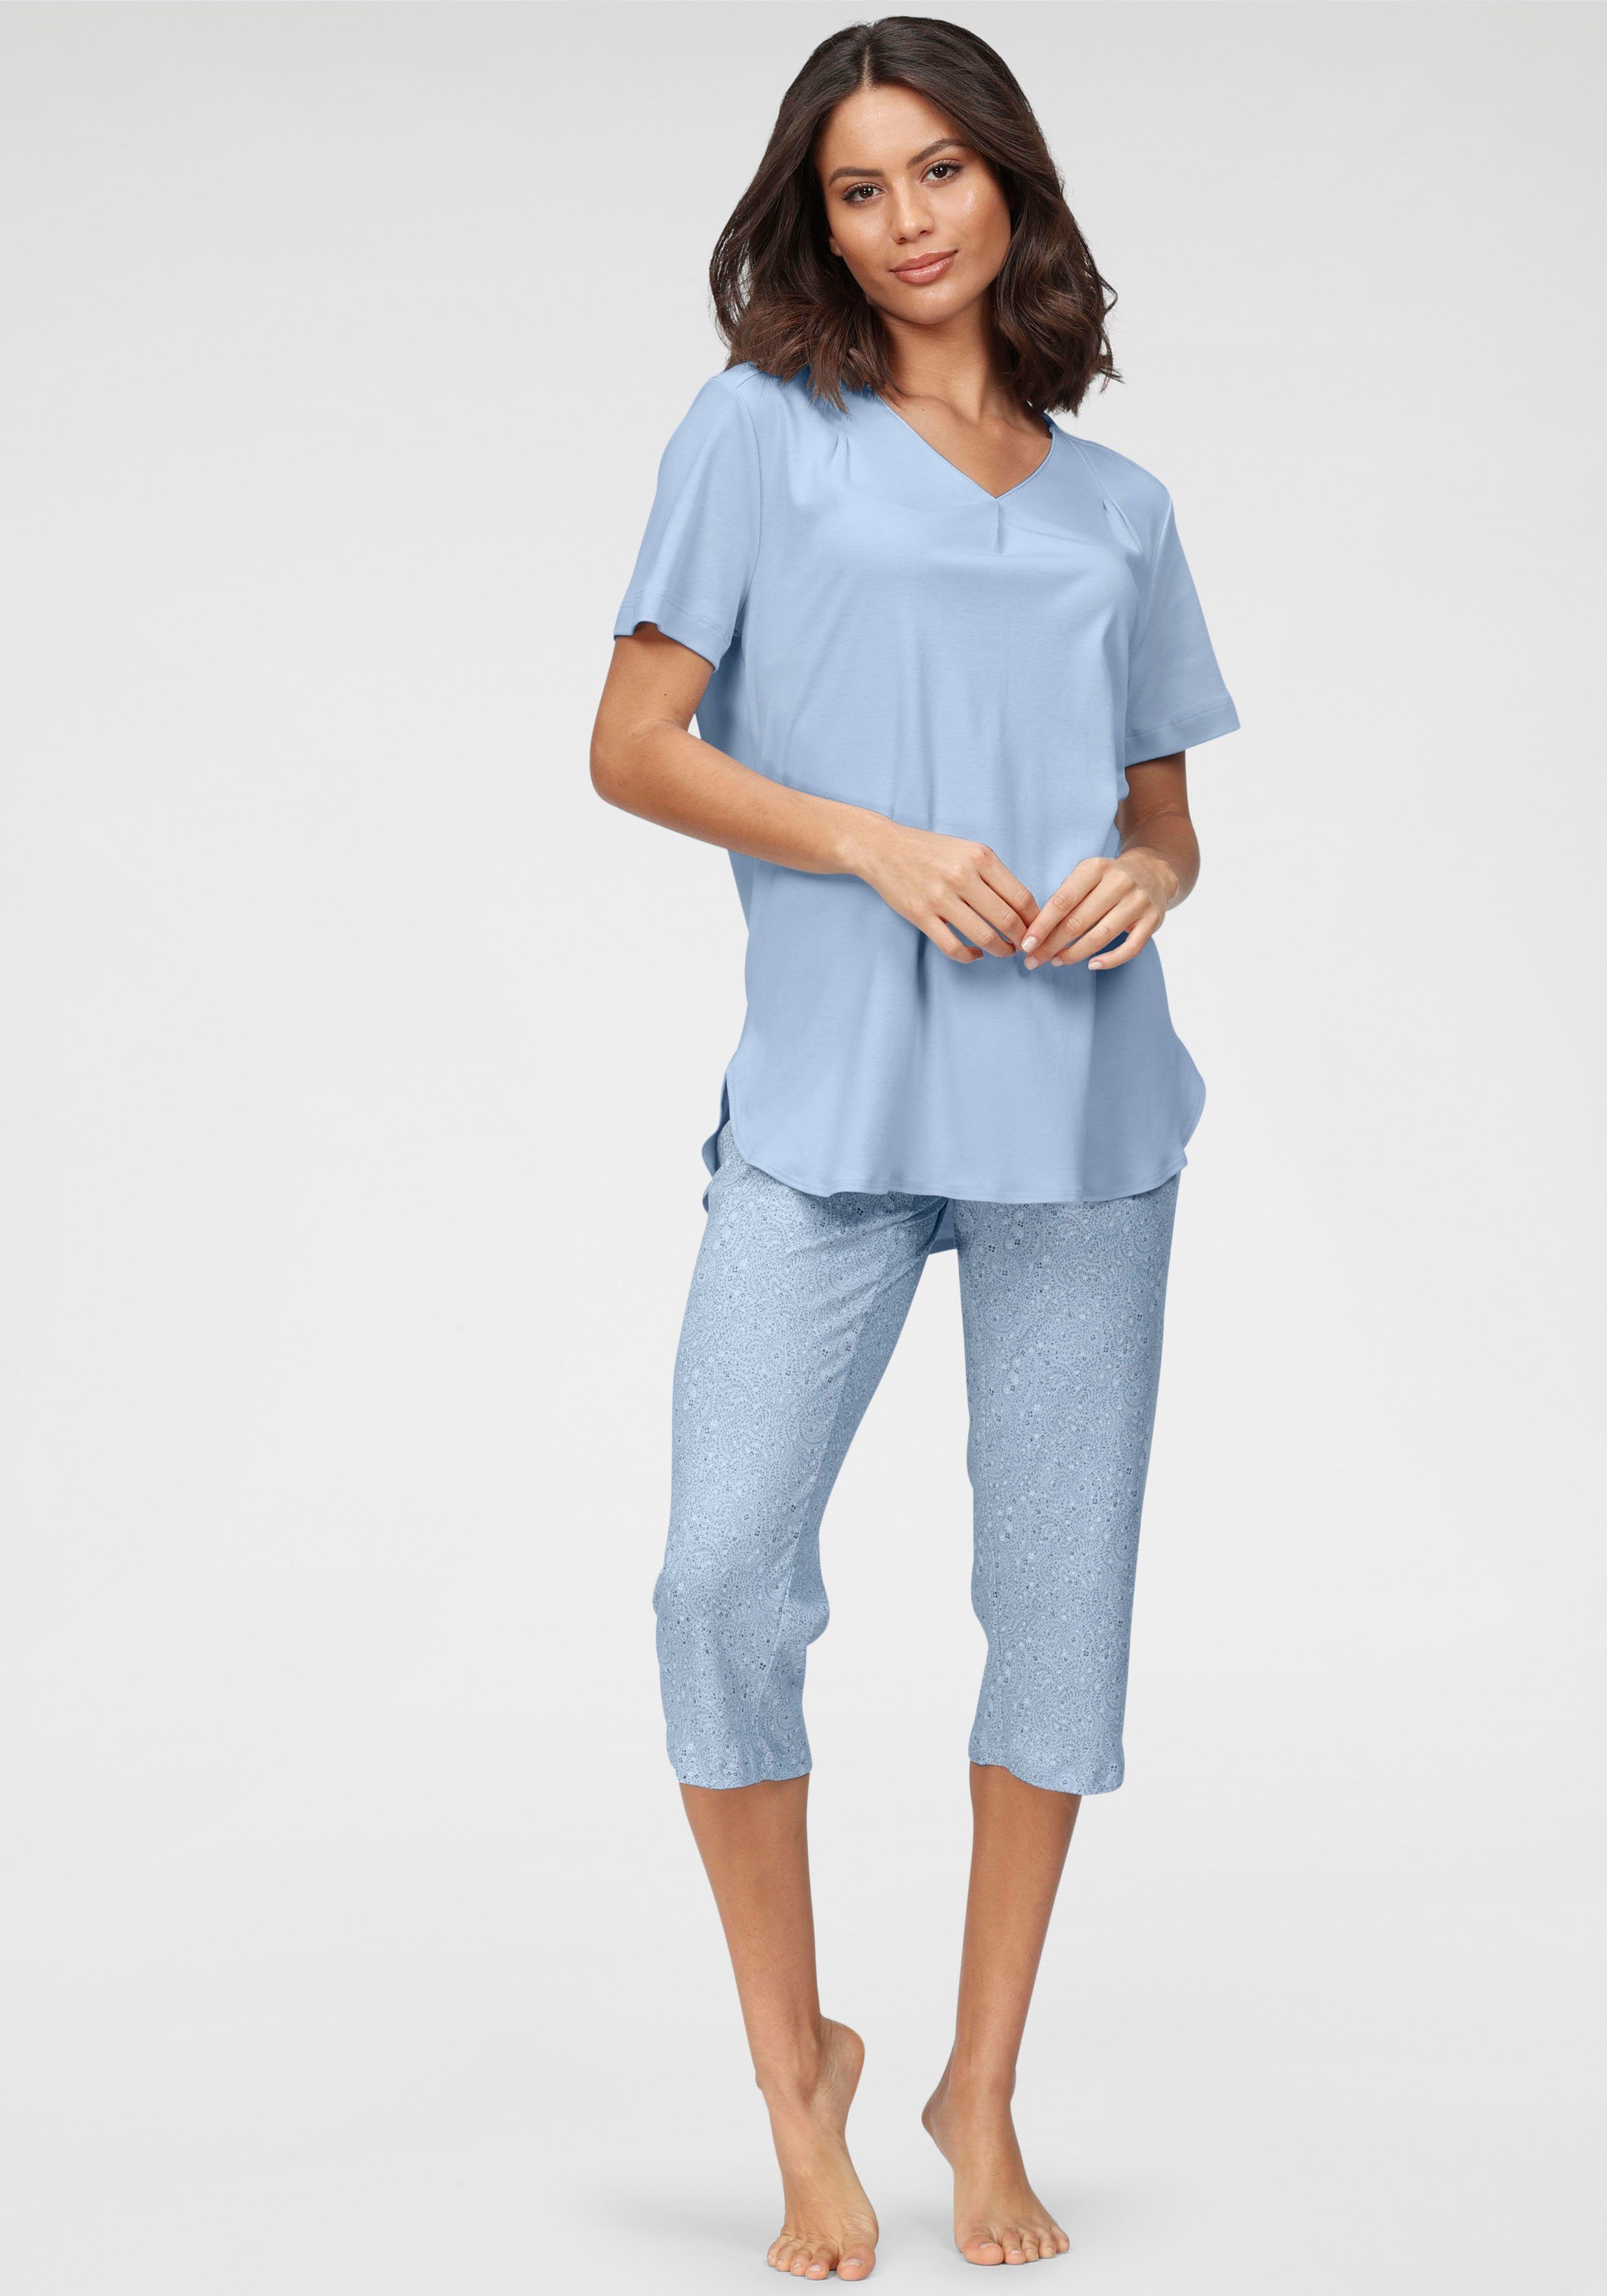 Schiesser Pyjamas online kaufen » Schiesser Schlafanzug | OTTO